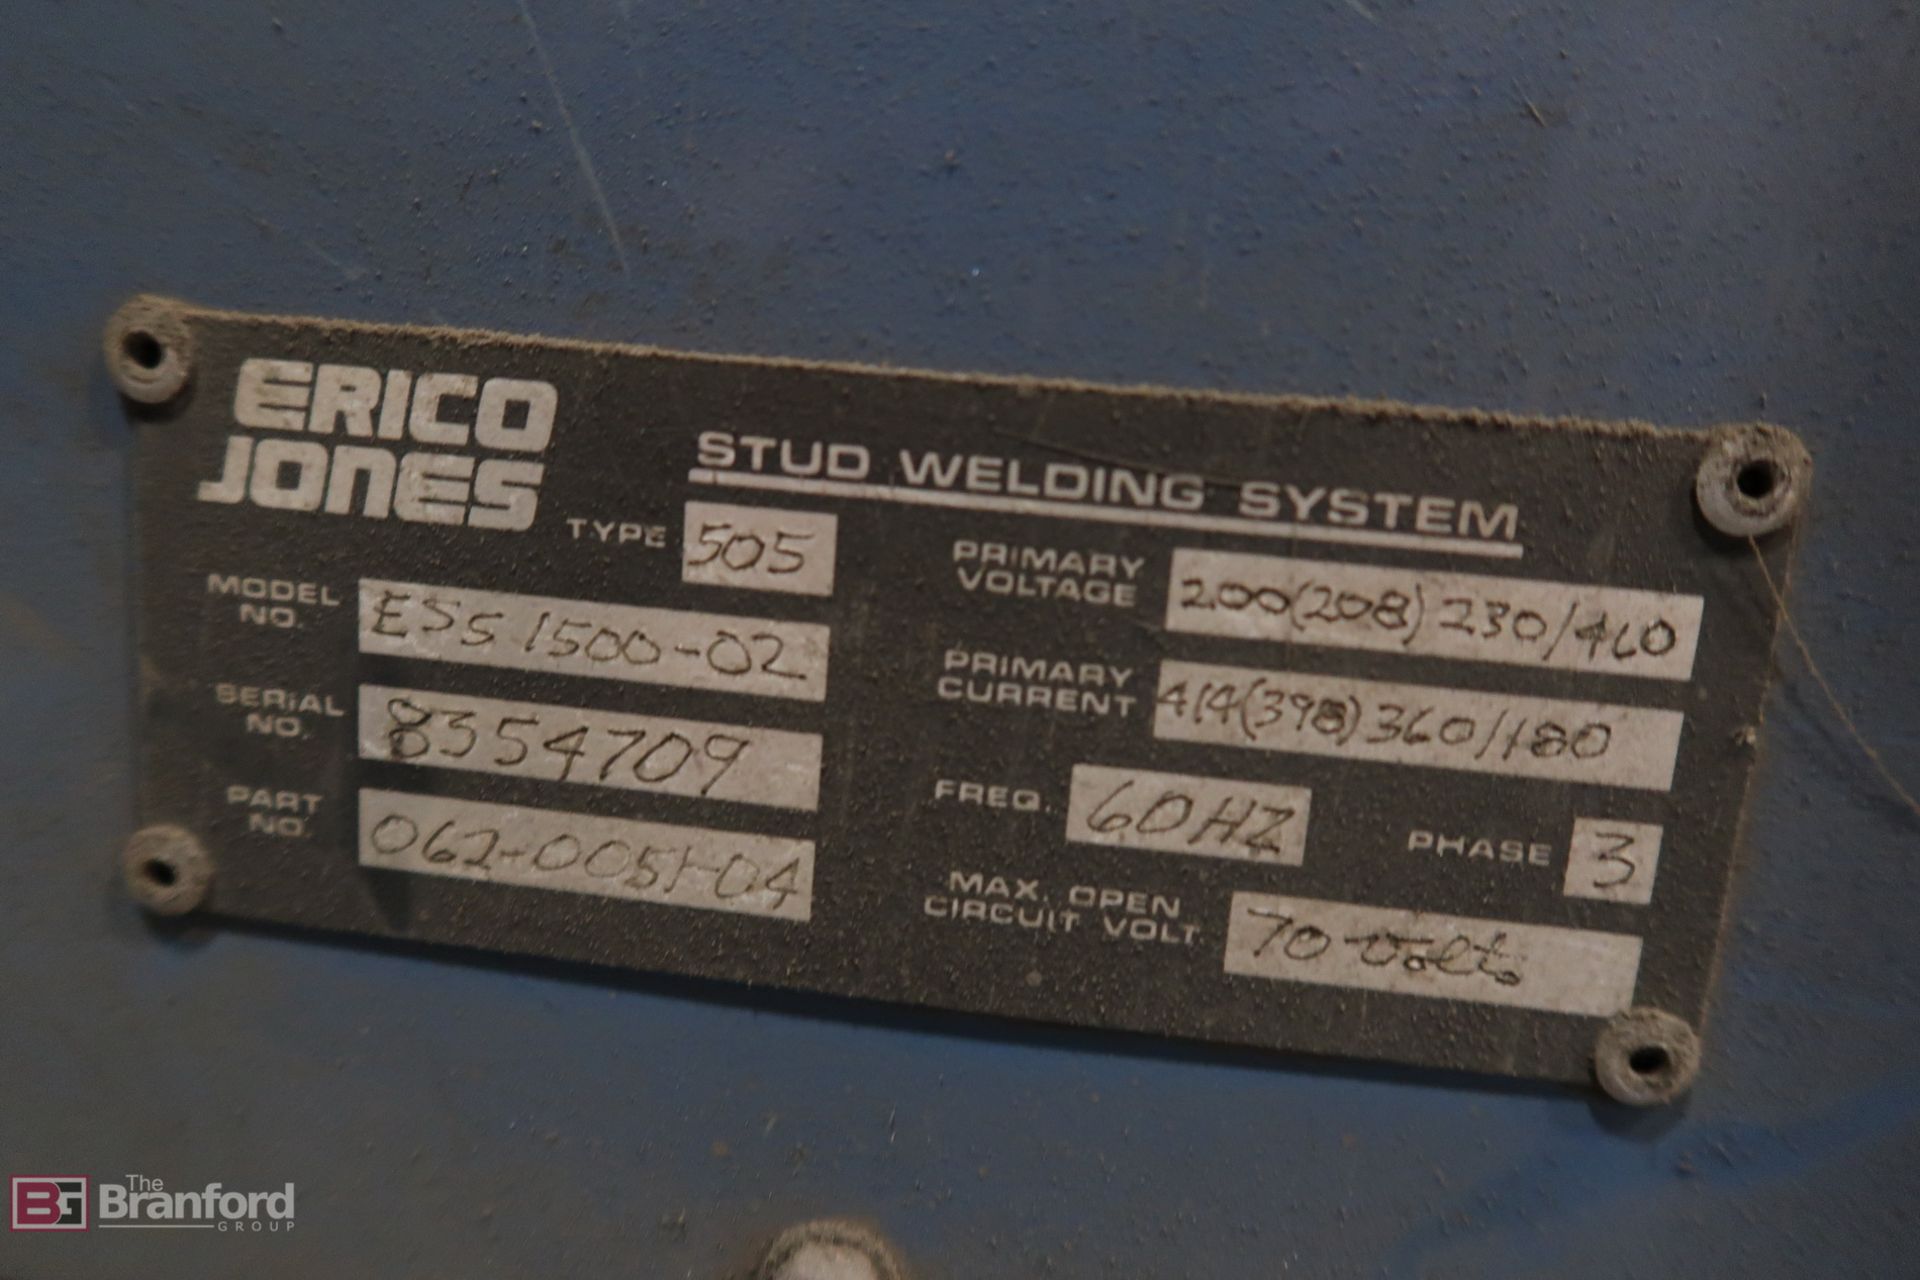 Erico Jones ESS 1500-02 Arc Stud Welder - Image 4 of 4